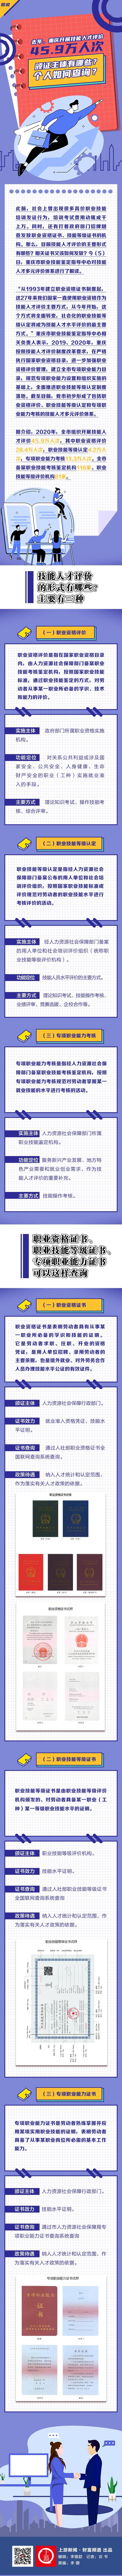 图说 去年 重庆开展技能人才评价45 9万人次 颁证主体有哪些 个人如何查询